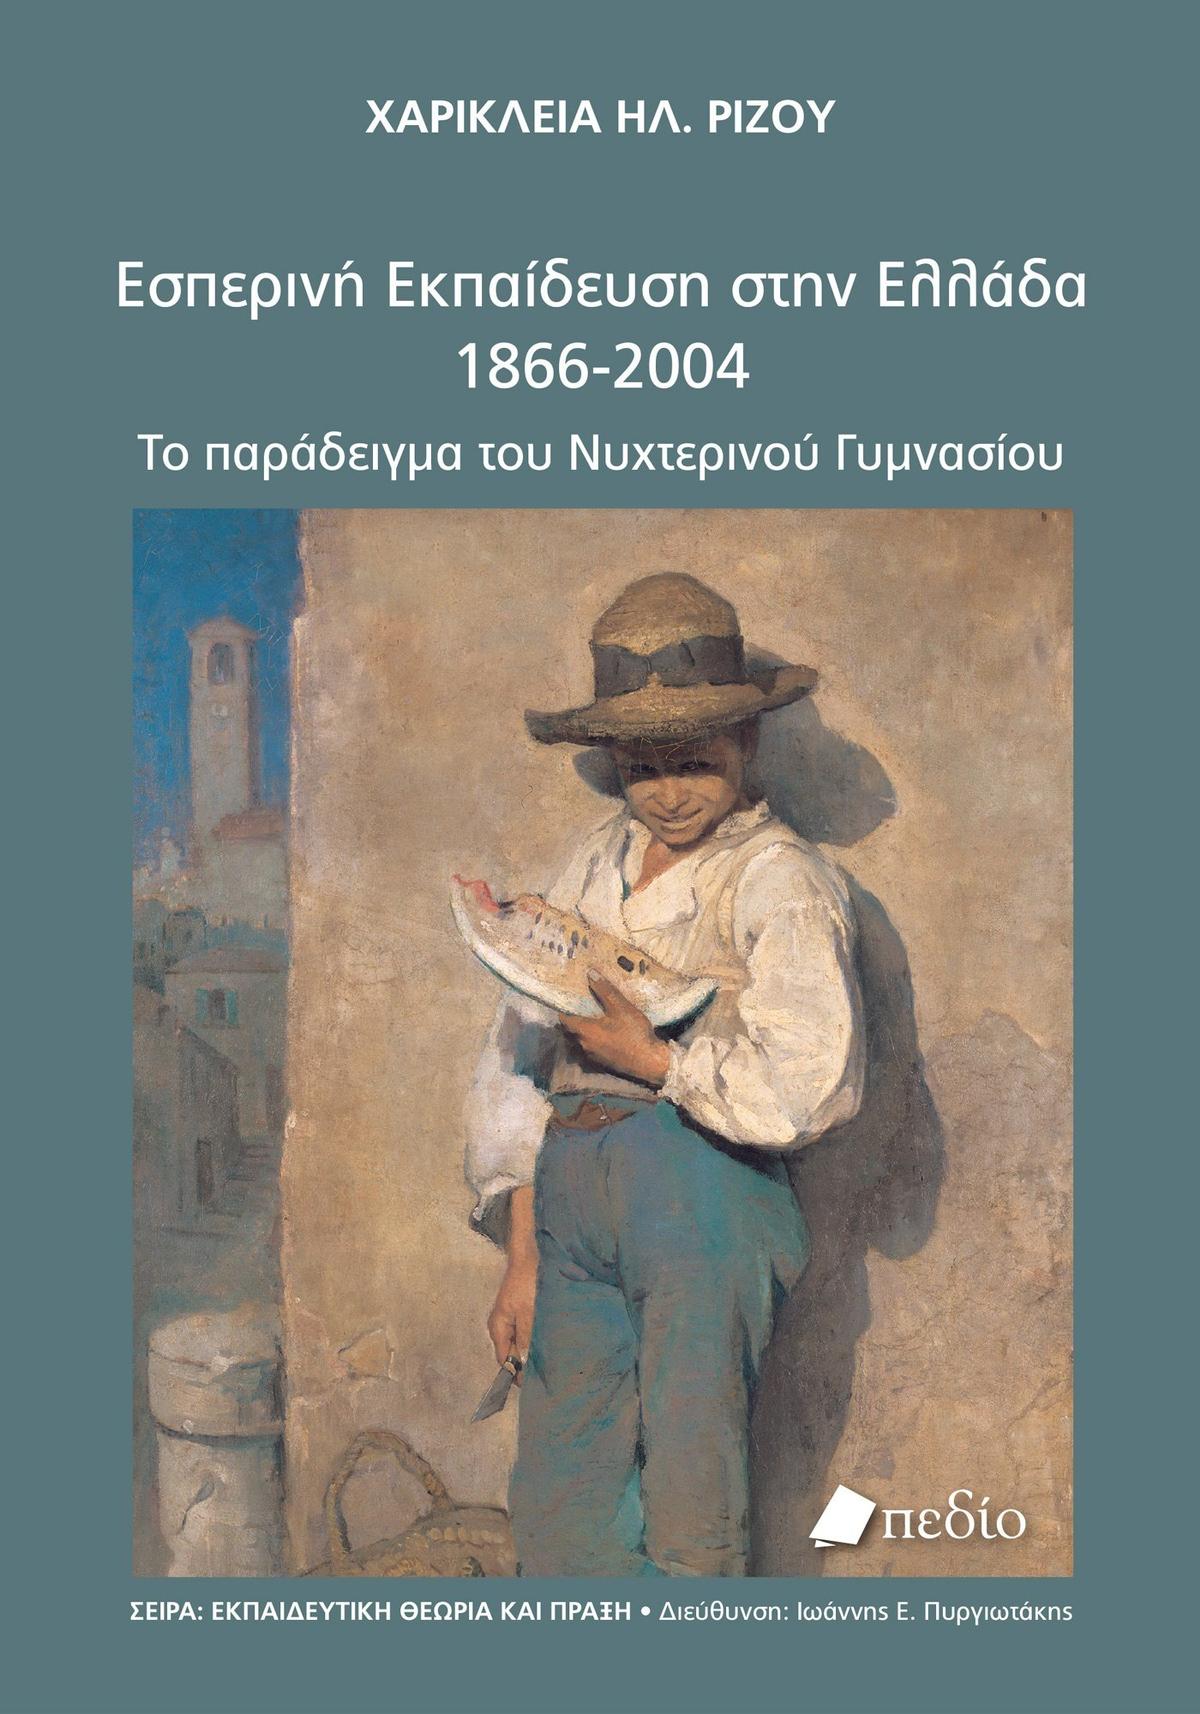 Εσπερινή εκπαίδευση στην Ελλάδα 1866-2004